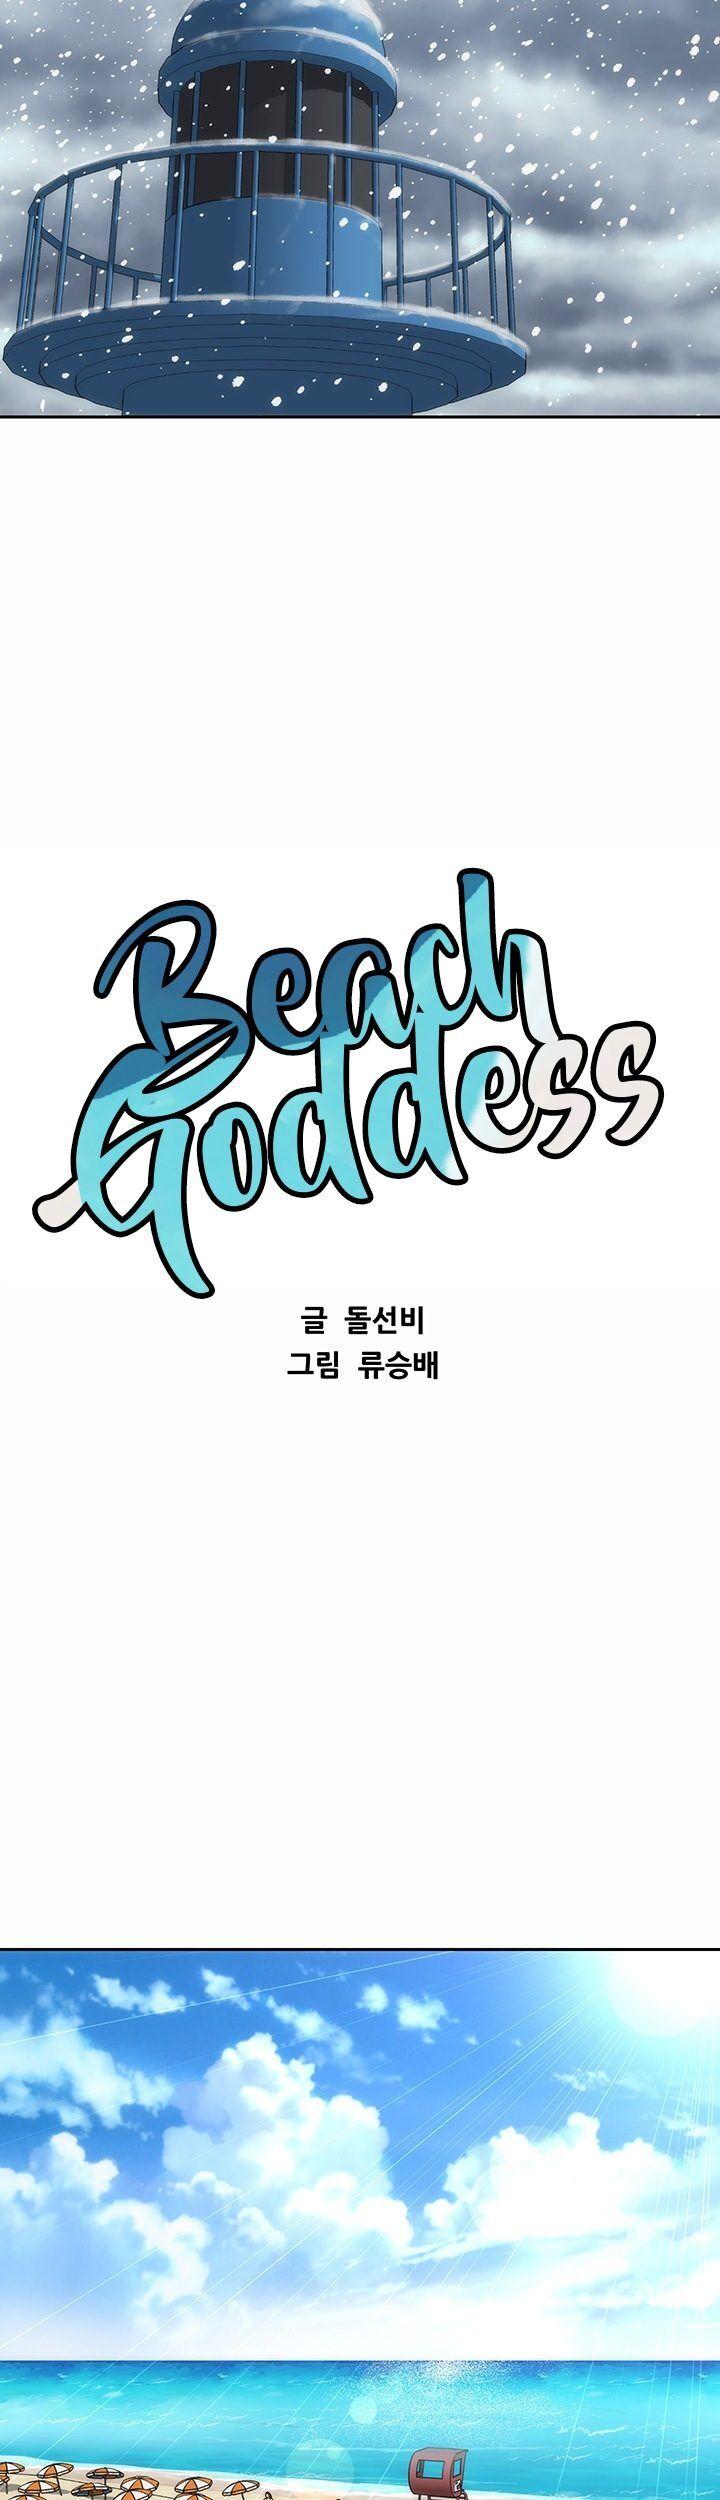 Beach Goddess 140